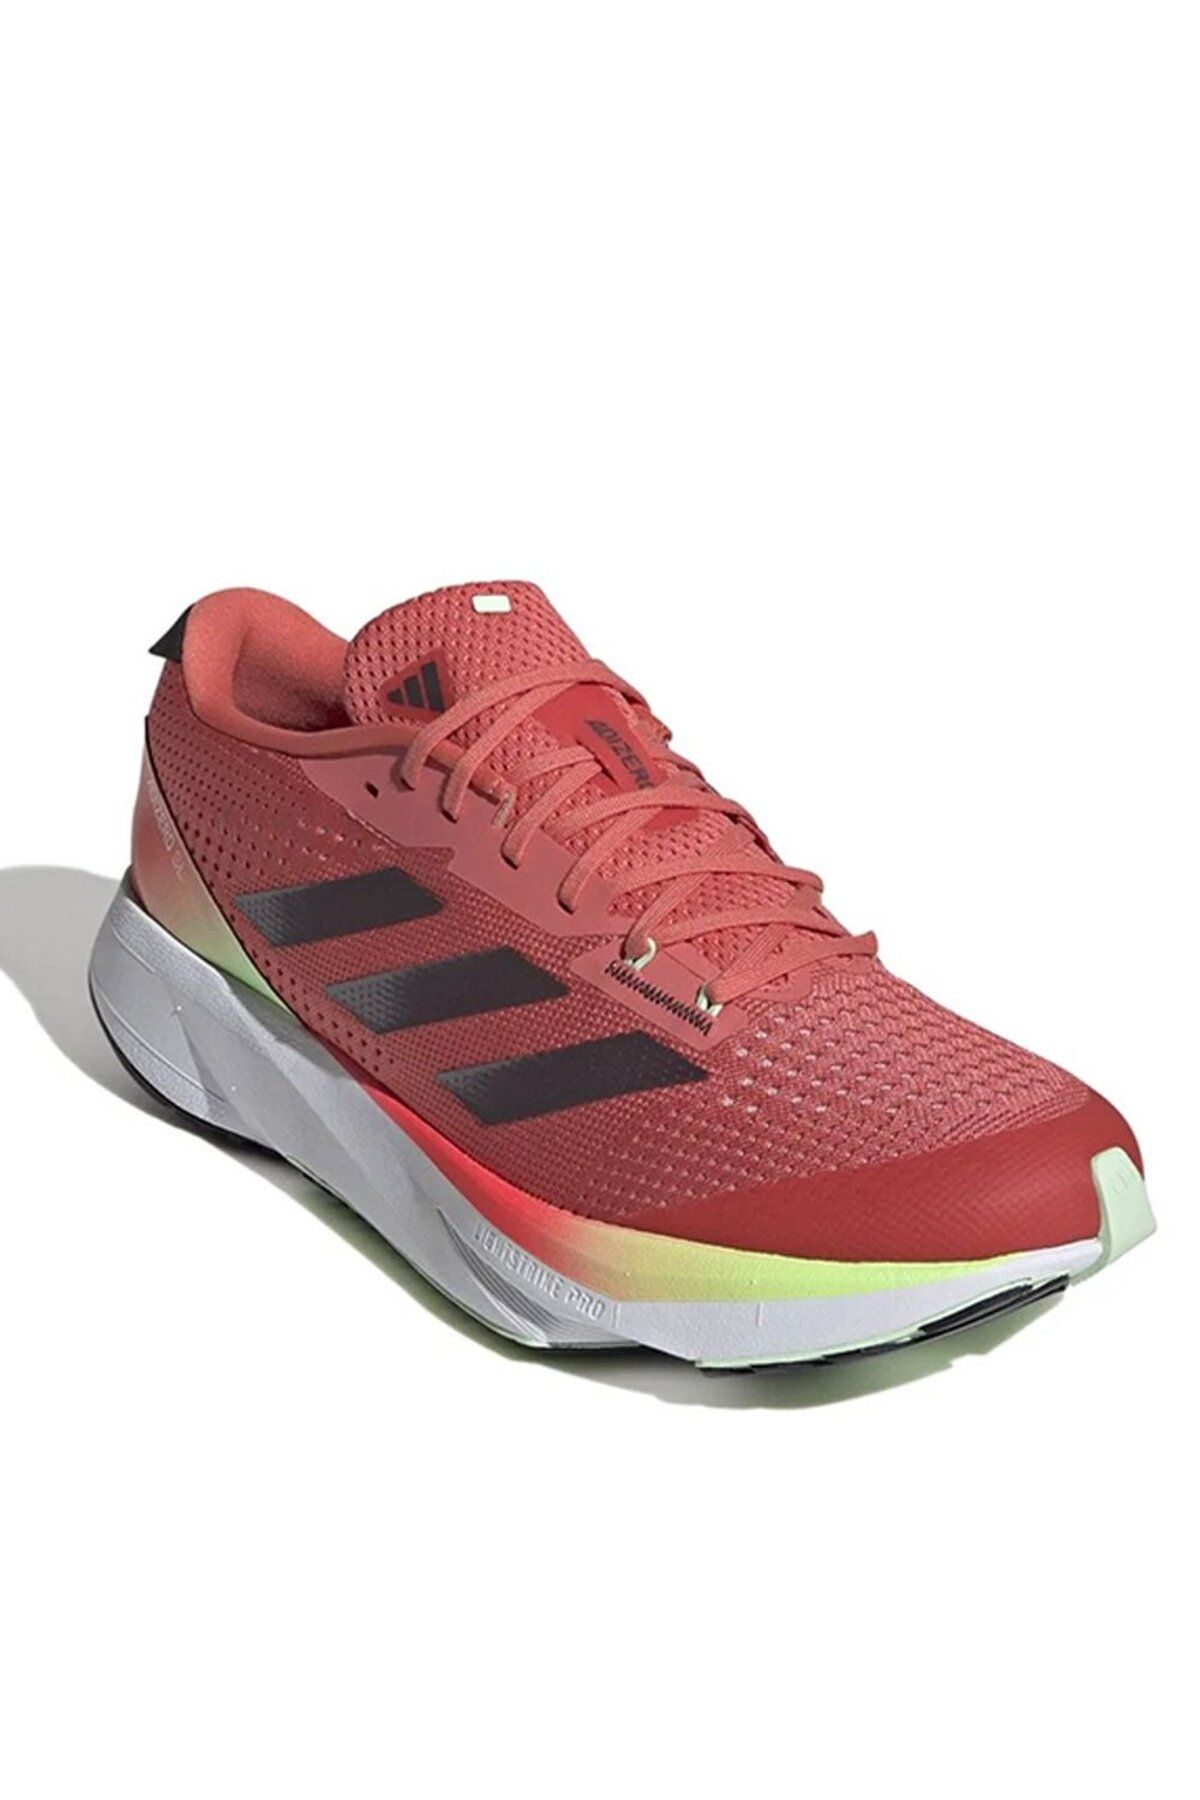 adidas Adızero Sl Erkek Koşu Ayakkabısı